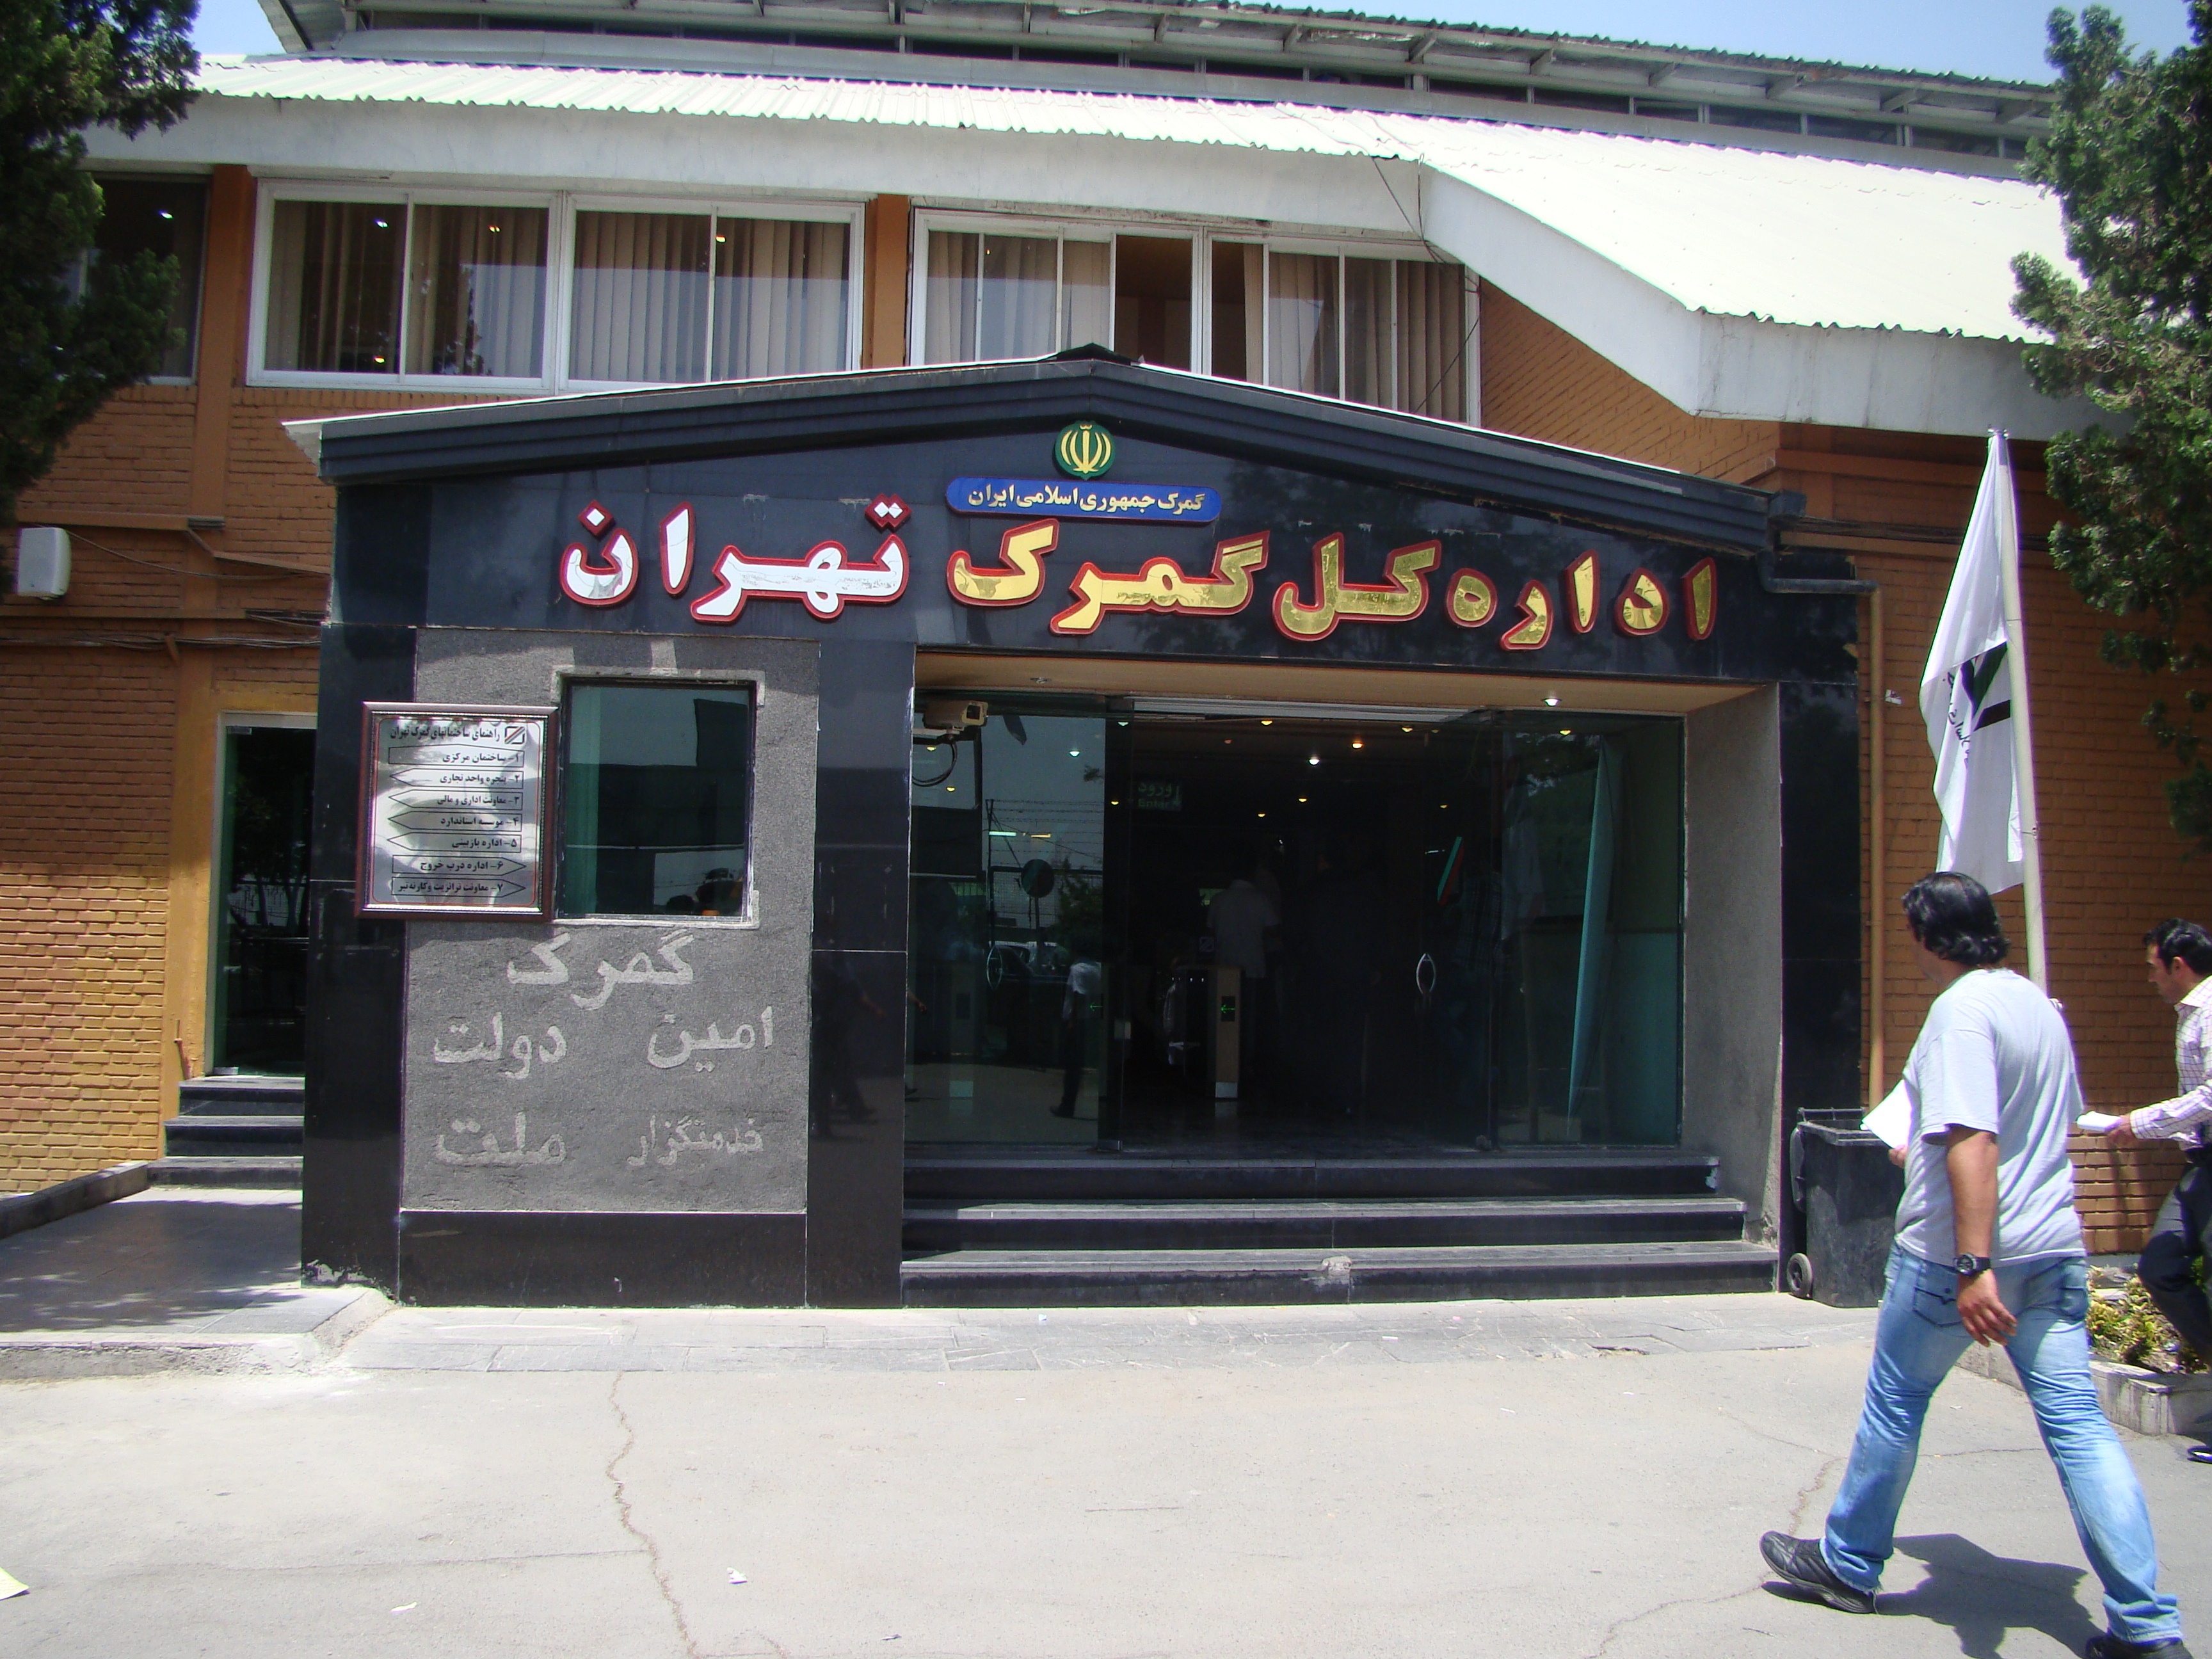 درآمد گمرک تهران در 5 ماه  92 درصد افزایش پیدا کرد/ جزئیات رشد درآمدهای گمرک تهران